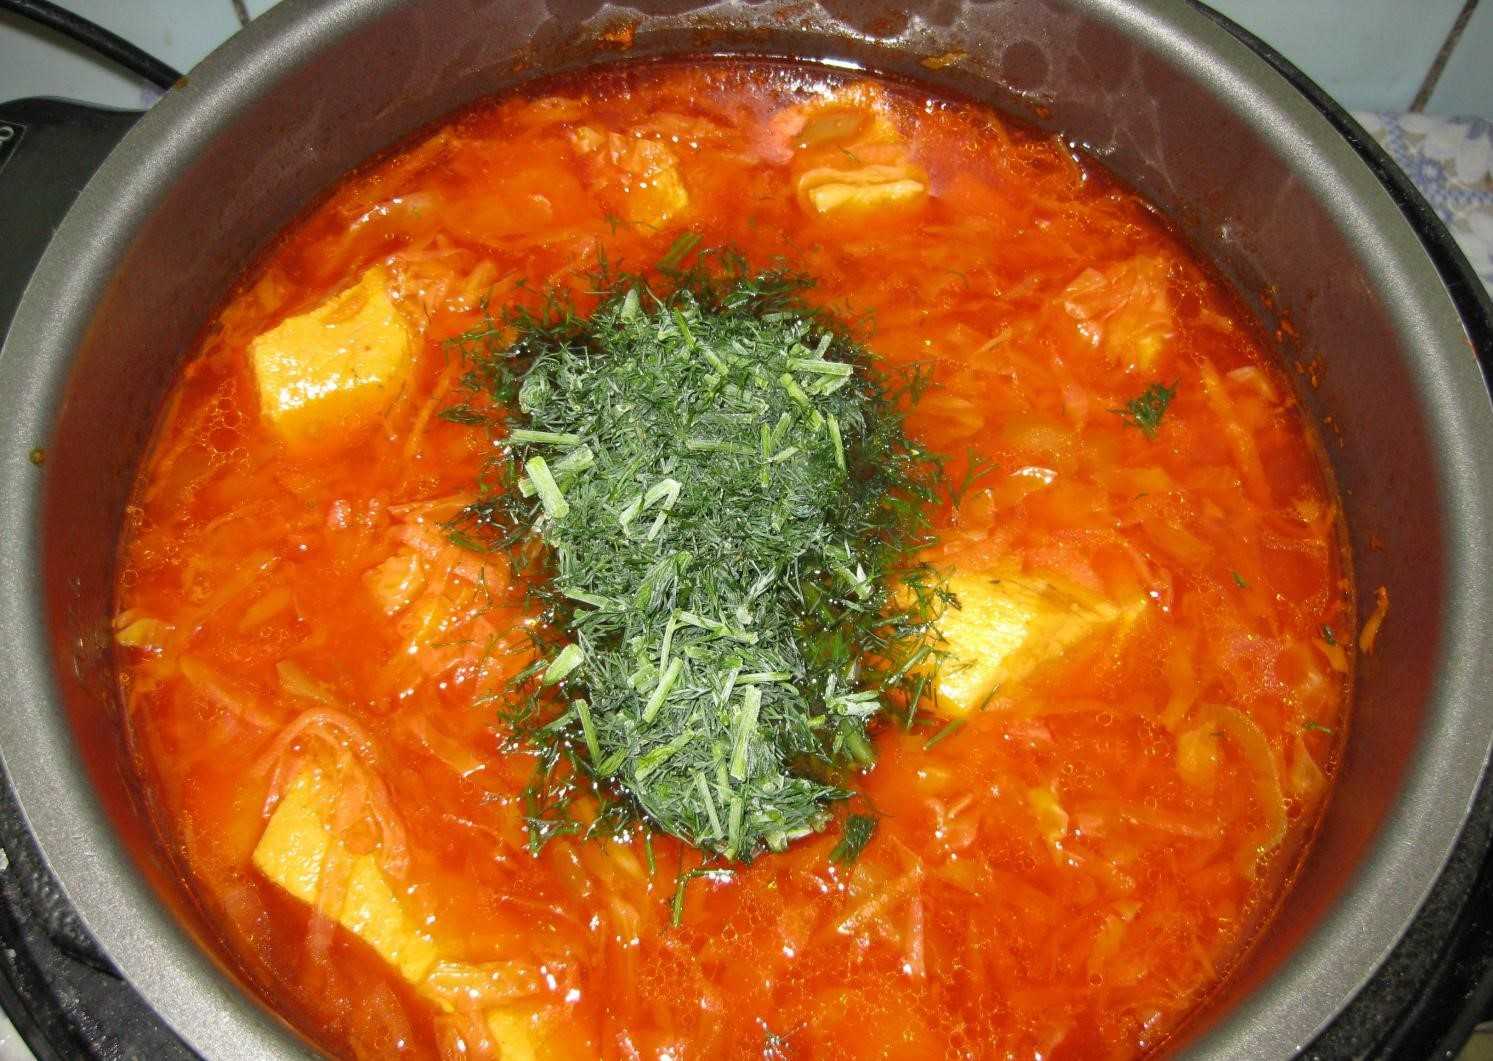 Борщ с щавелем – рецепт приготовления летнего зеленого супа